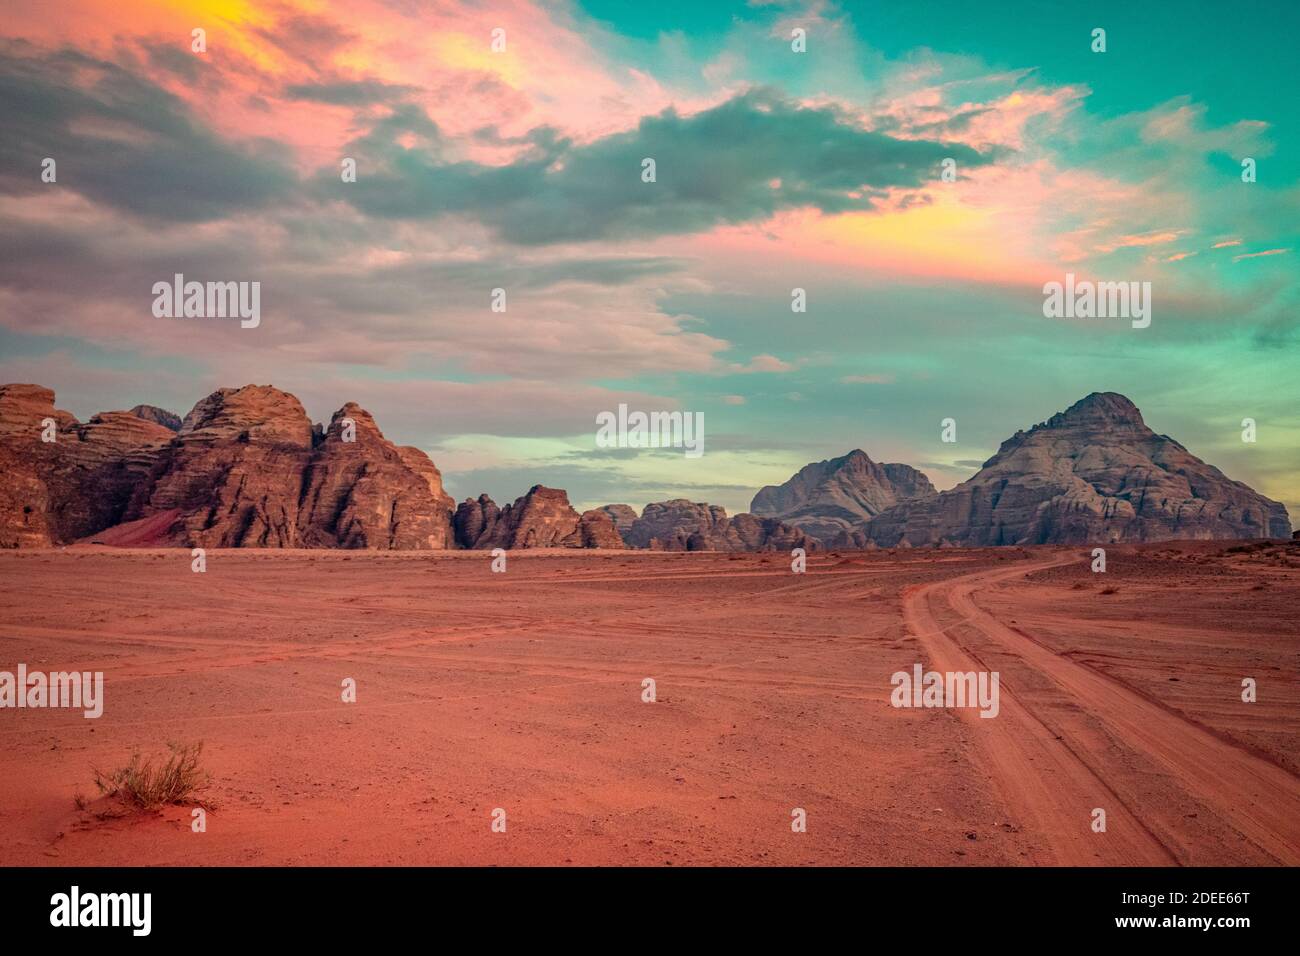 Planet Mars-ähnliche Landschaft - Foto der Wadi Rum Wüste in Jordanien mit rotem rosafarbenem Himmel oben wurde diese Location als Drehort für viele Science-Fiction-Filme genutzt Stockfoto